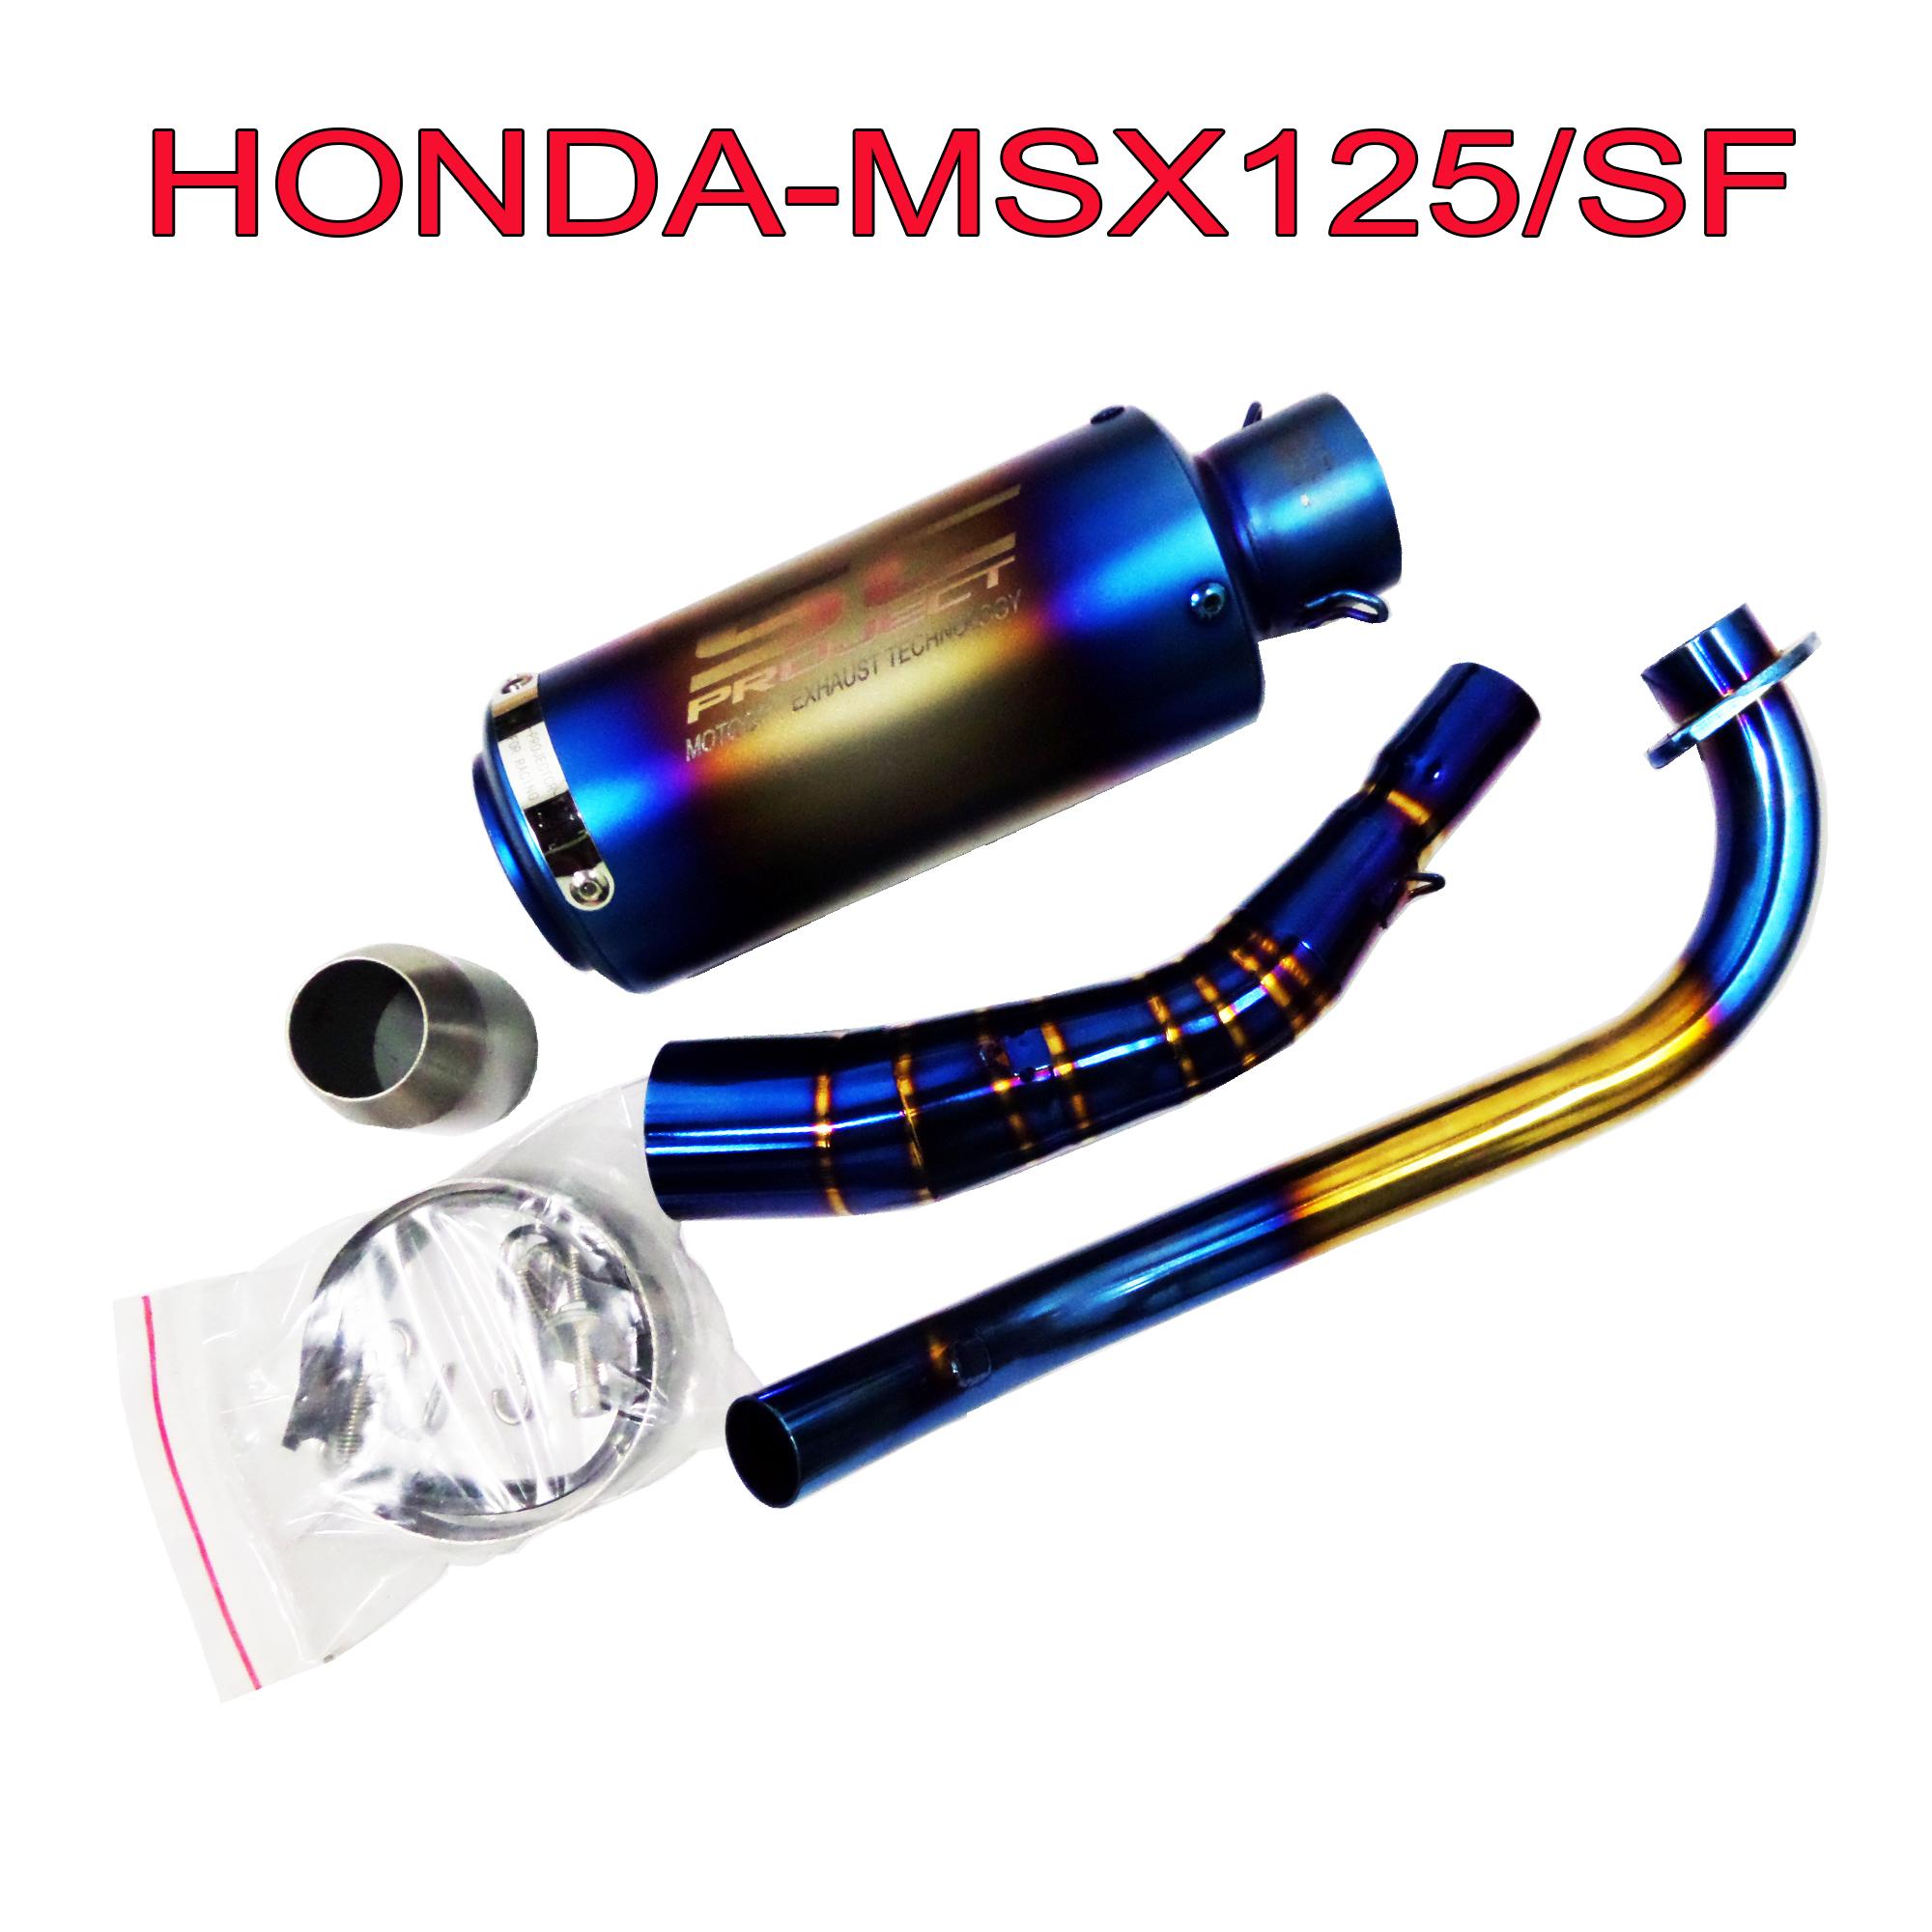 ท่อแต่ง ท่อไอเสียแต่ง ปลายท่อสูตร 2 นิ้ว พร้อมคอท่อสแตนเลแท้สีไทเททอง เกรดA สำหรับ HONDA-MSX125=SF (ปลายไทเทเนียม) SC สุดเทพ